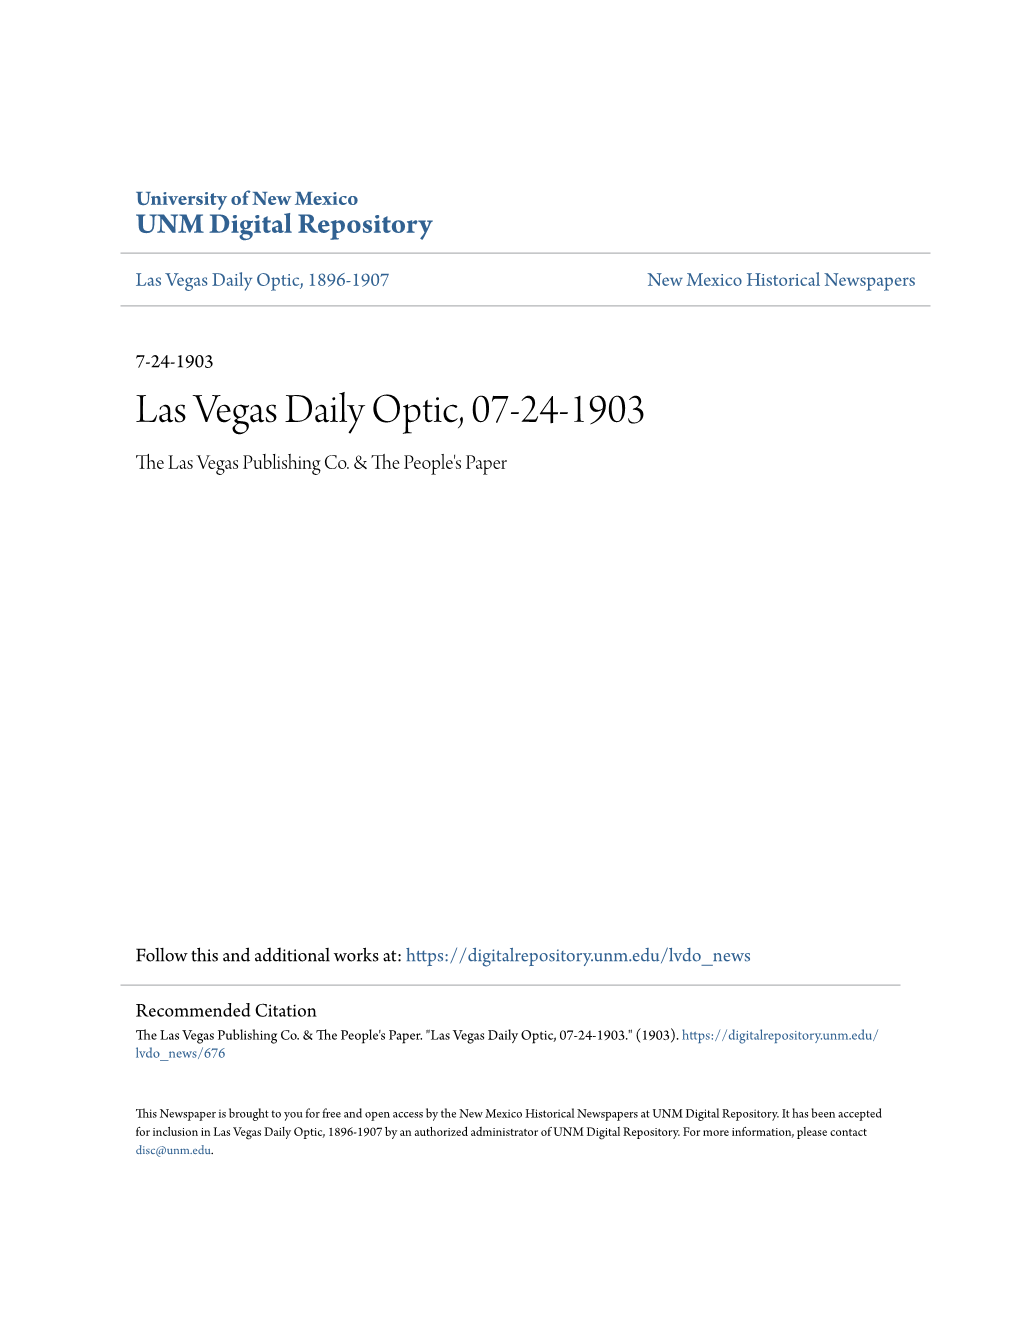 Las Vegas Daily Optic, 07-24-1903 the Las Vegas Publishing Co